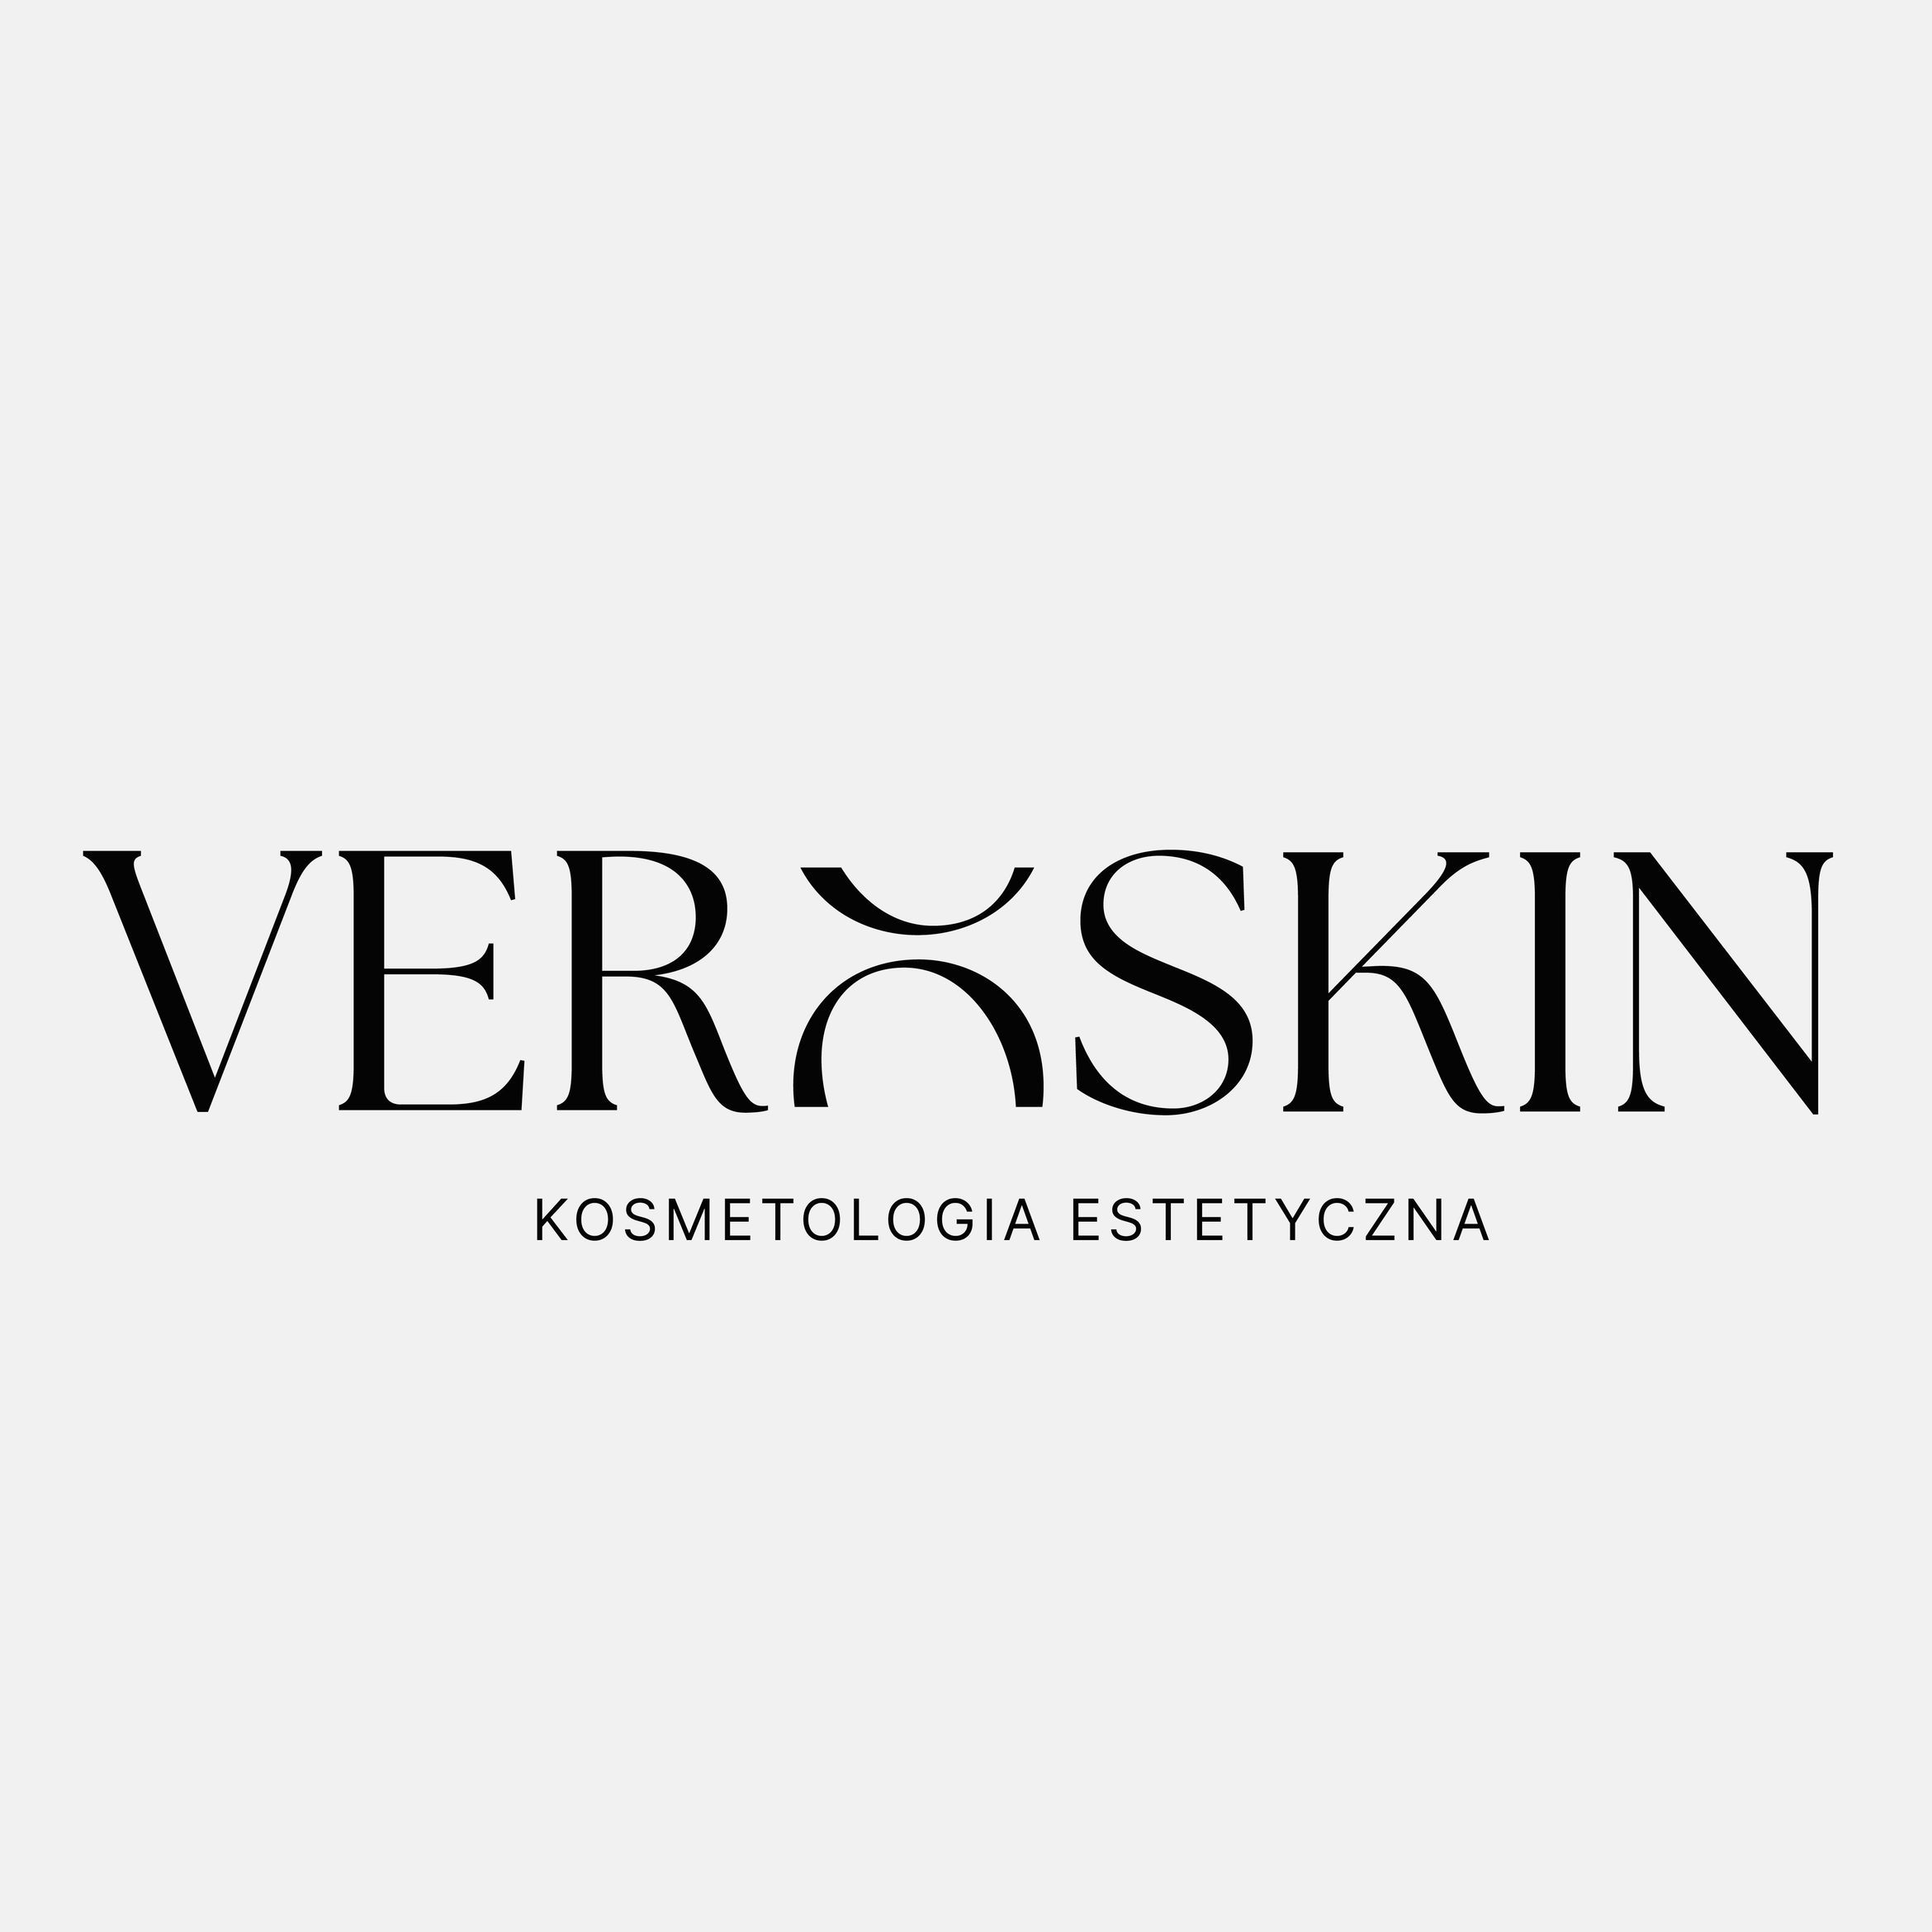 VeroSkin Kosmetologia Estetyczna, Gdańska 137, 84-200, Wejherowo